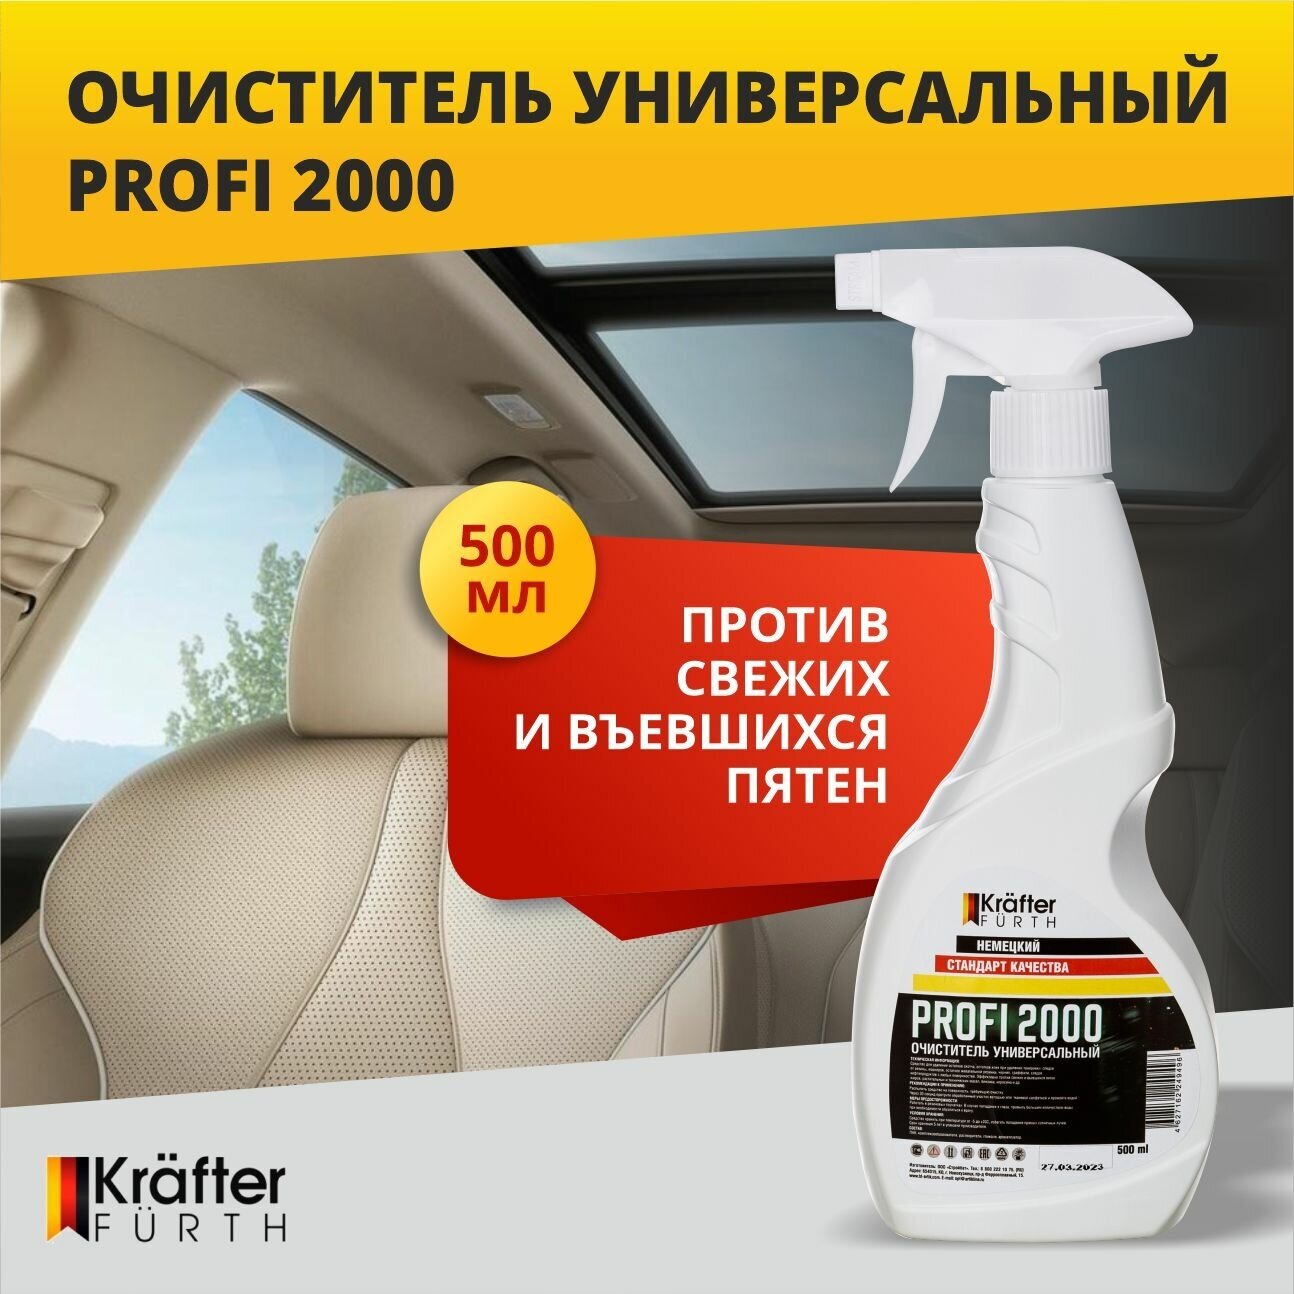 Очиститель универсальный для салона автомобиля и интерьера, Profi 2000, Krafter Furth, 500 мл, спрей.